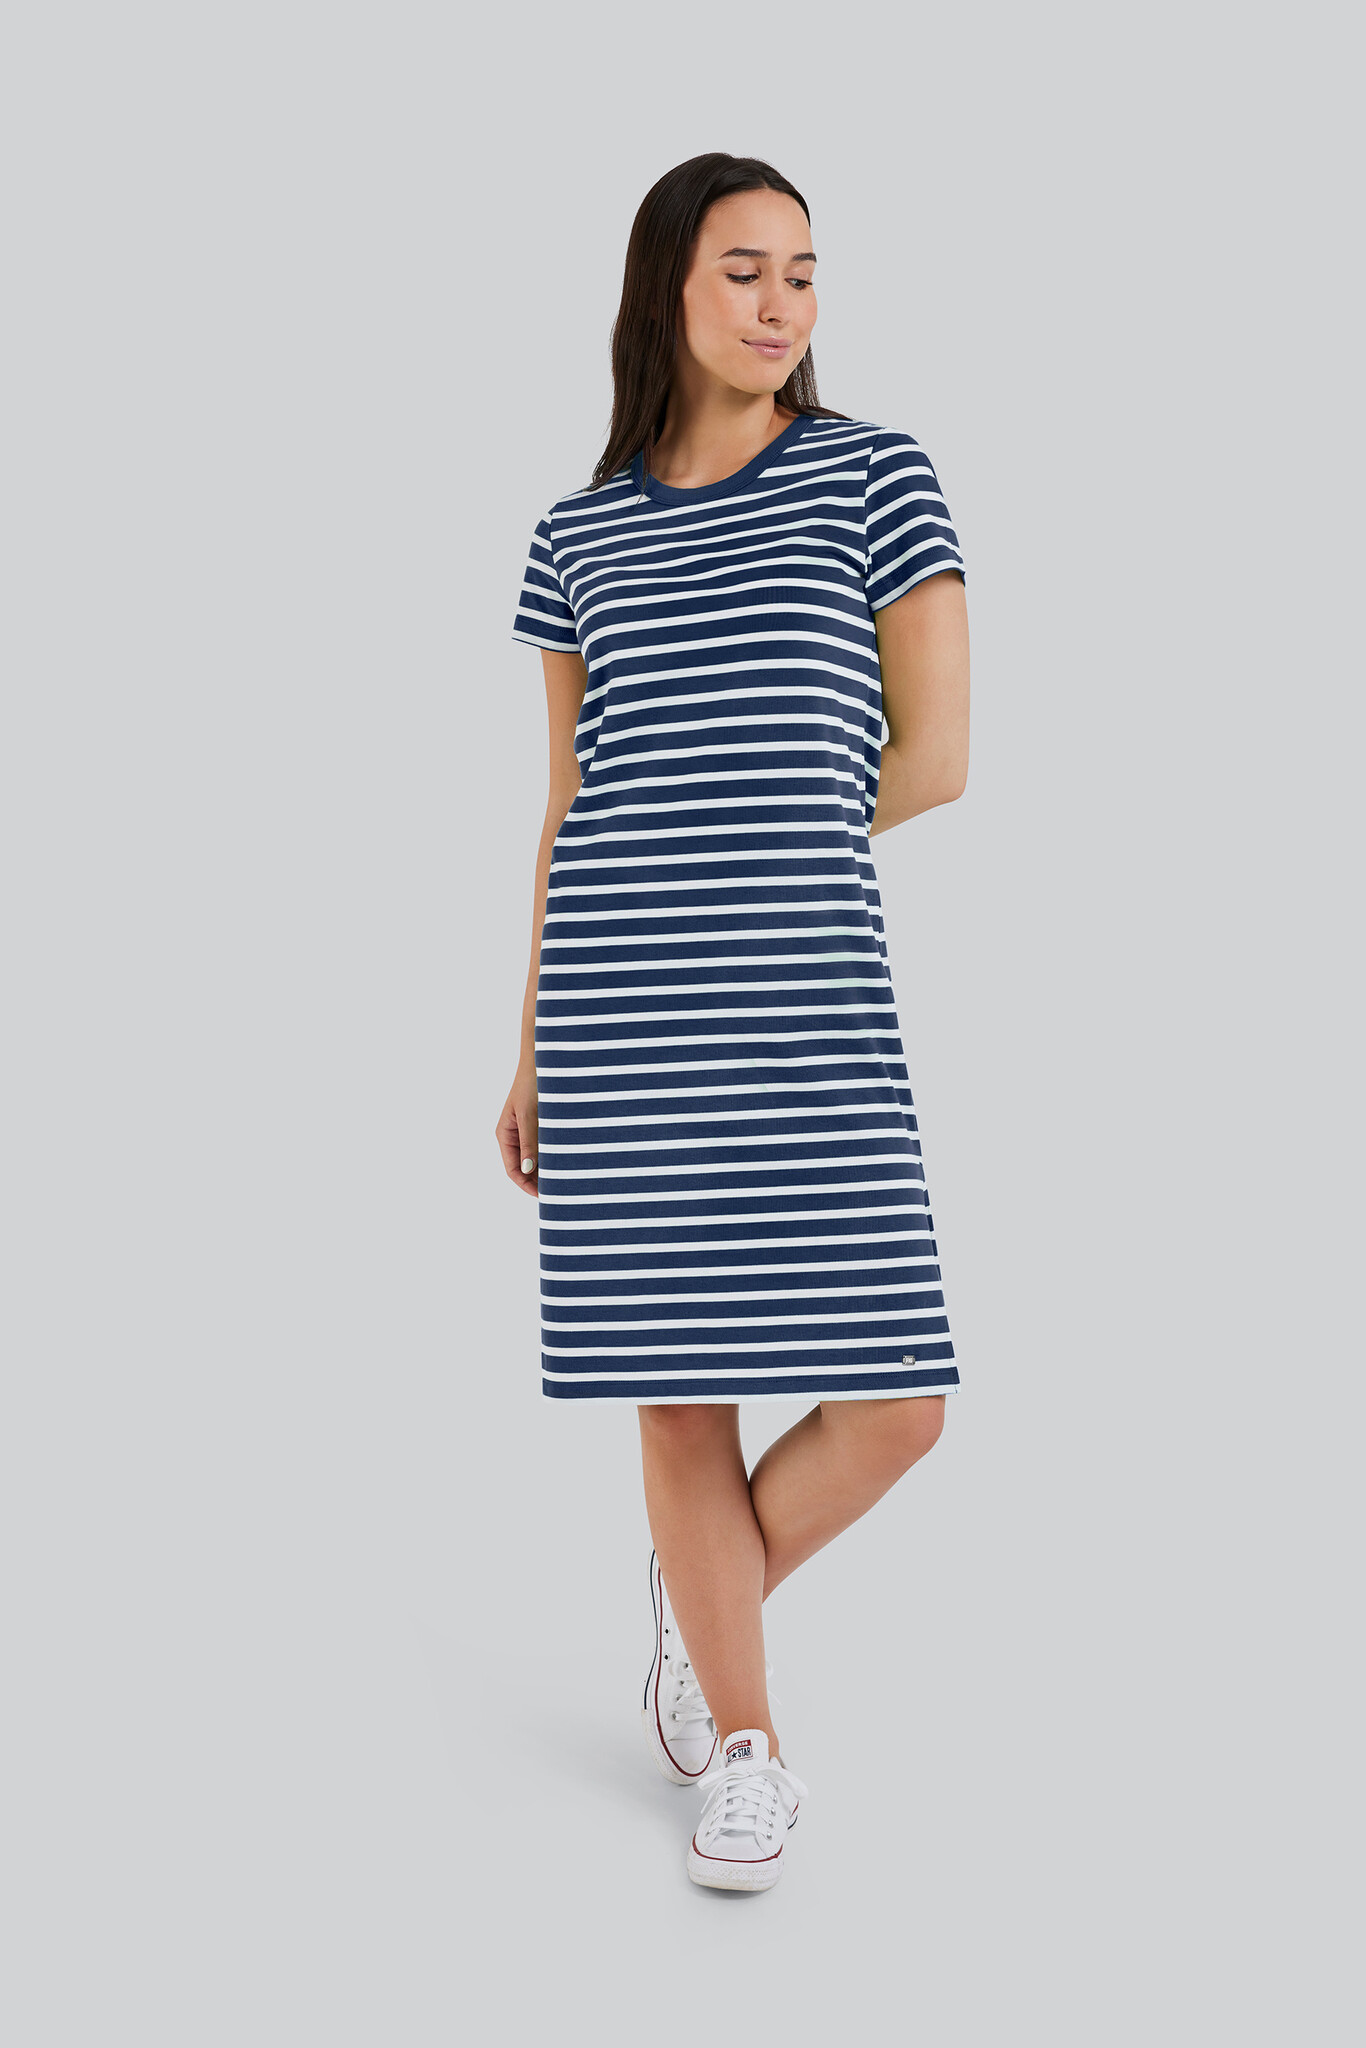 Newport Dress, Night Stripe